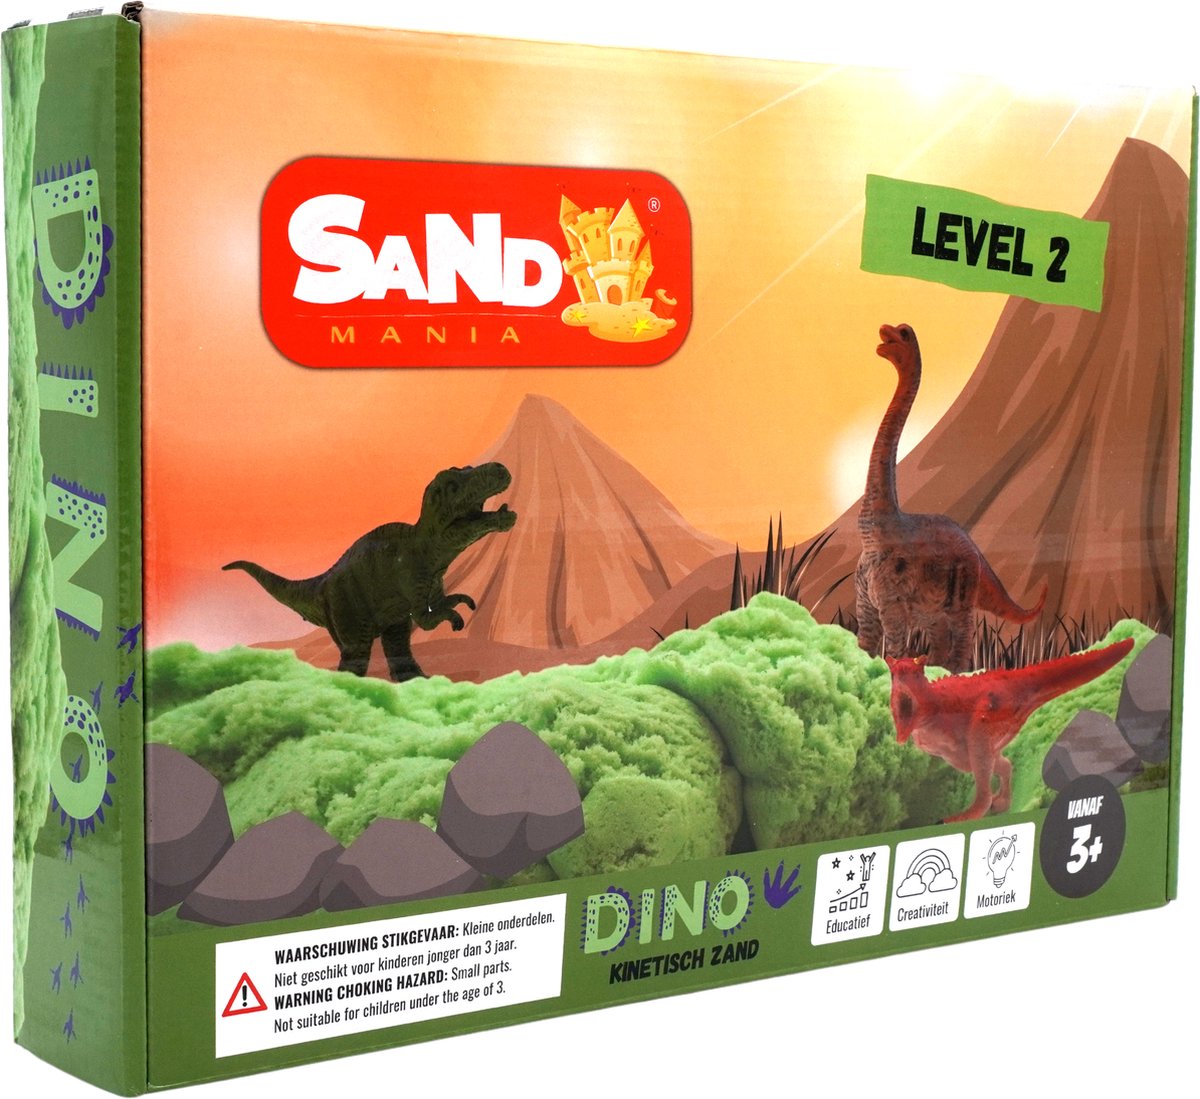 Sand mania® - Kinetisch zand - Dino level 2 box - 1,5 kg groen magisch zand - Speelzand met zand tray - Magic sand - Montessori speelgoed